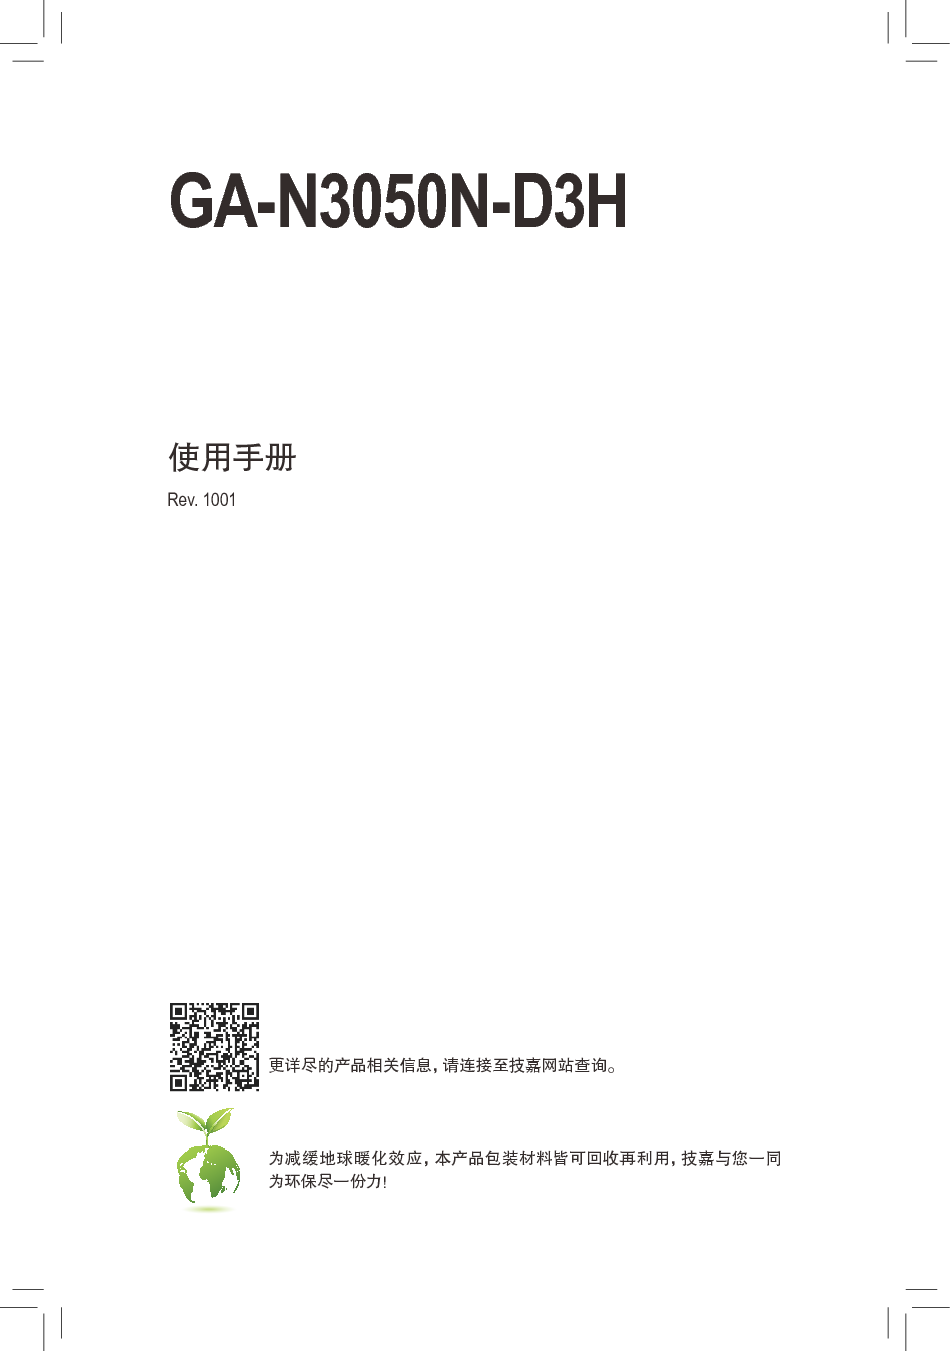 技嘉 Gigabyte GA-N3050N-D3H 使用手册 封面